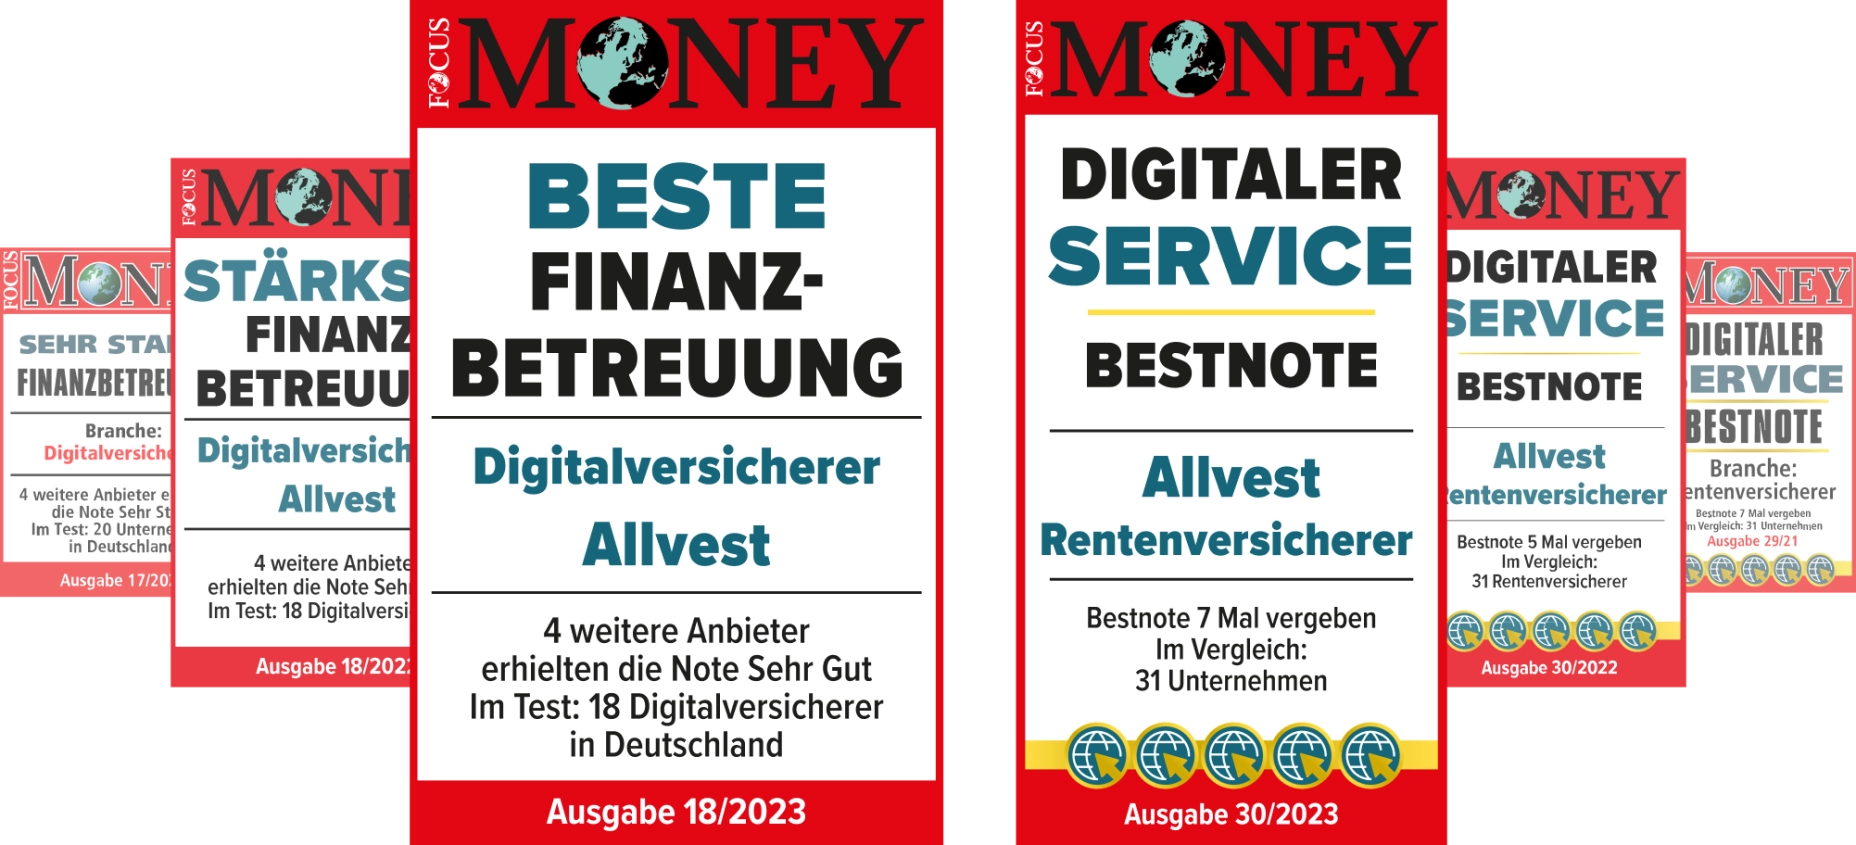 Auszeichnungen von Focus Money der letzten drei Jahre, in den Kategorien "Beste Finanzbetreuung" und "Digitaler Service".